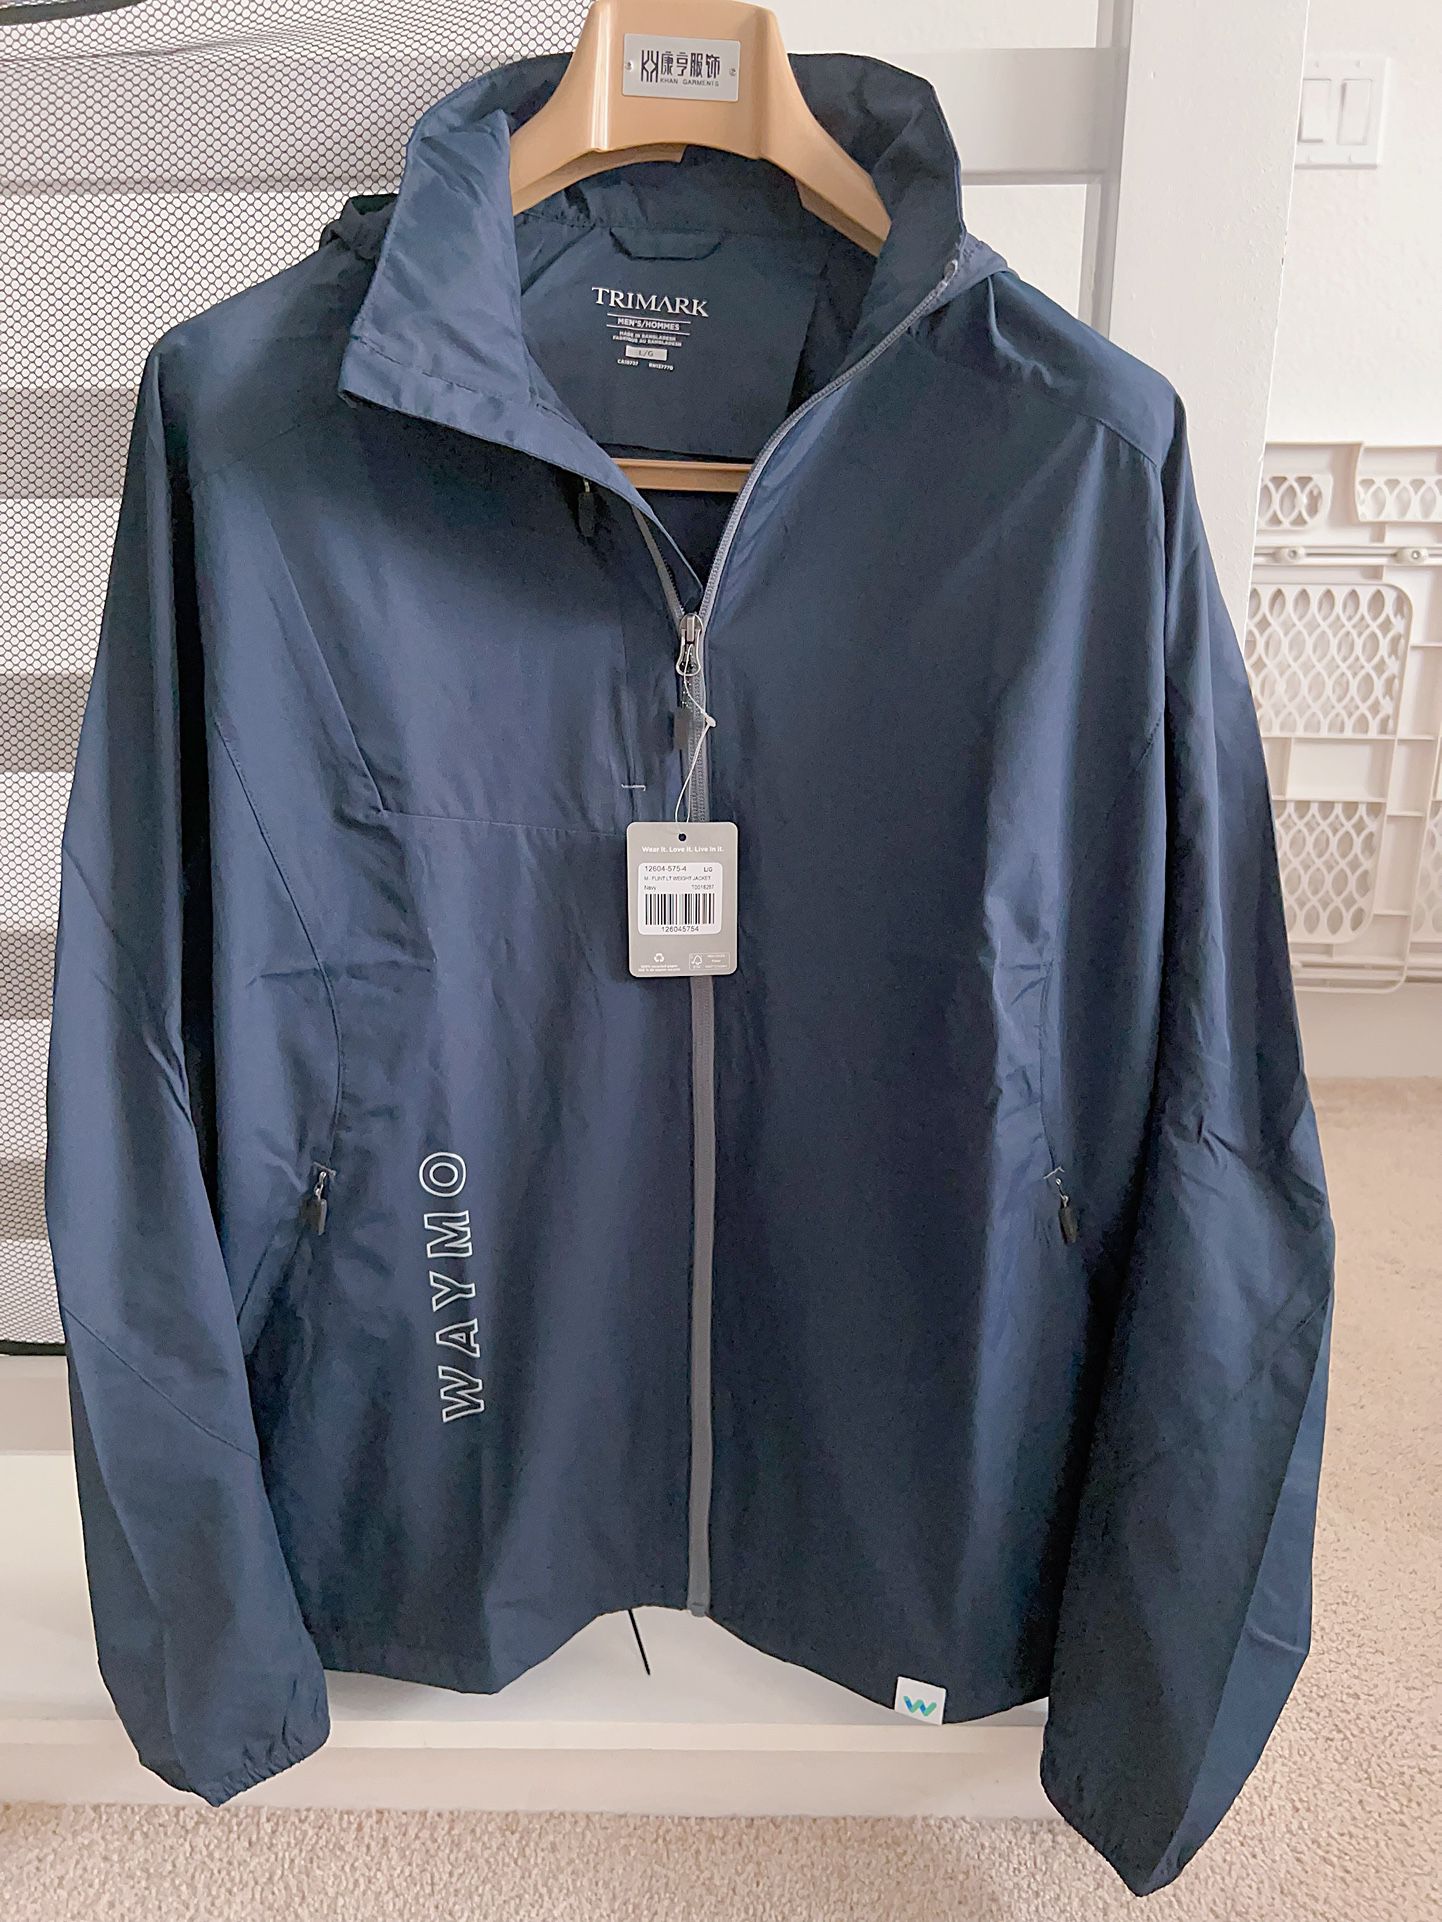 New Men Jacket Waymo Trimark jacket Size L Water Resistant Coat Top Hoodie Navy